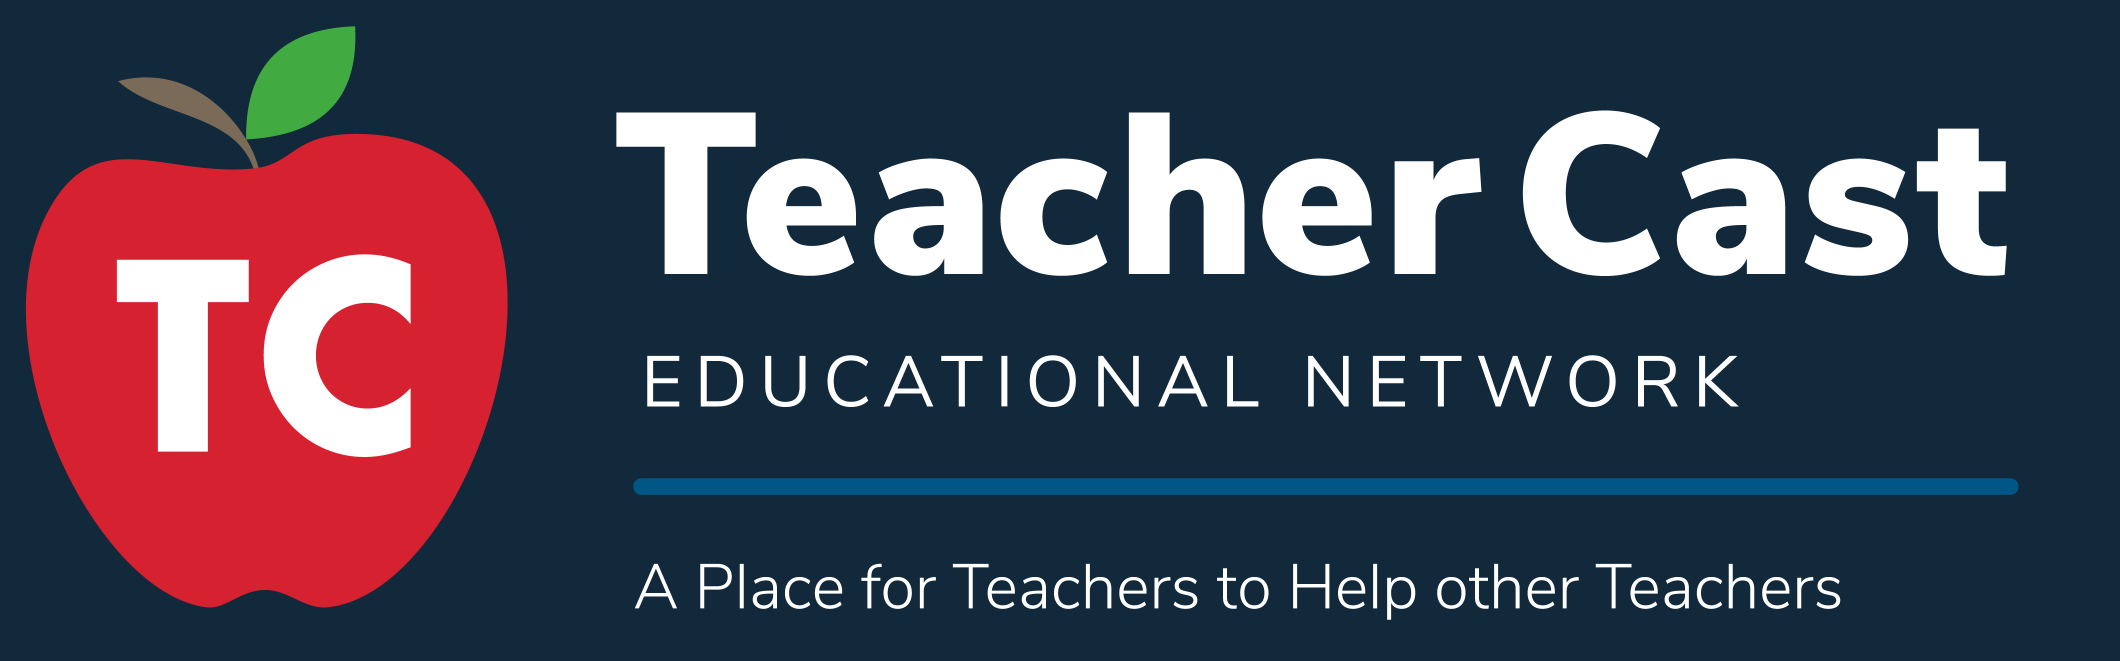 TeacherCast logo.png